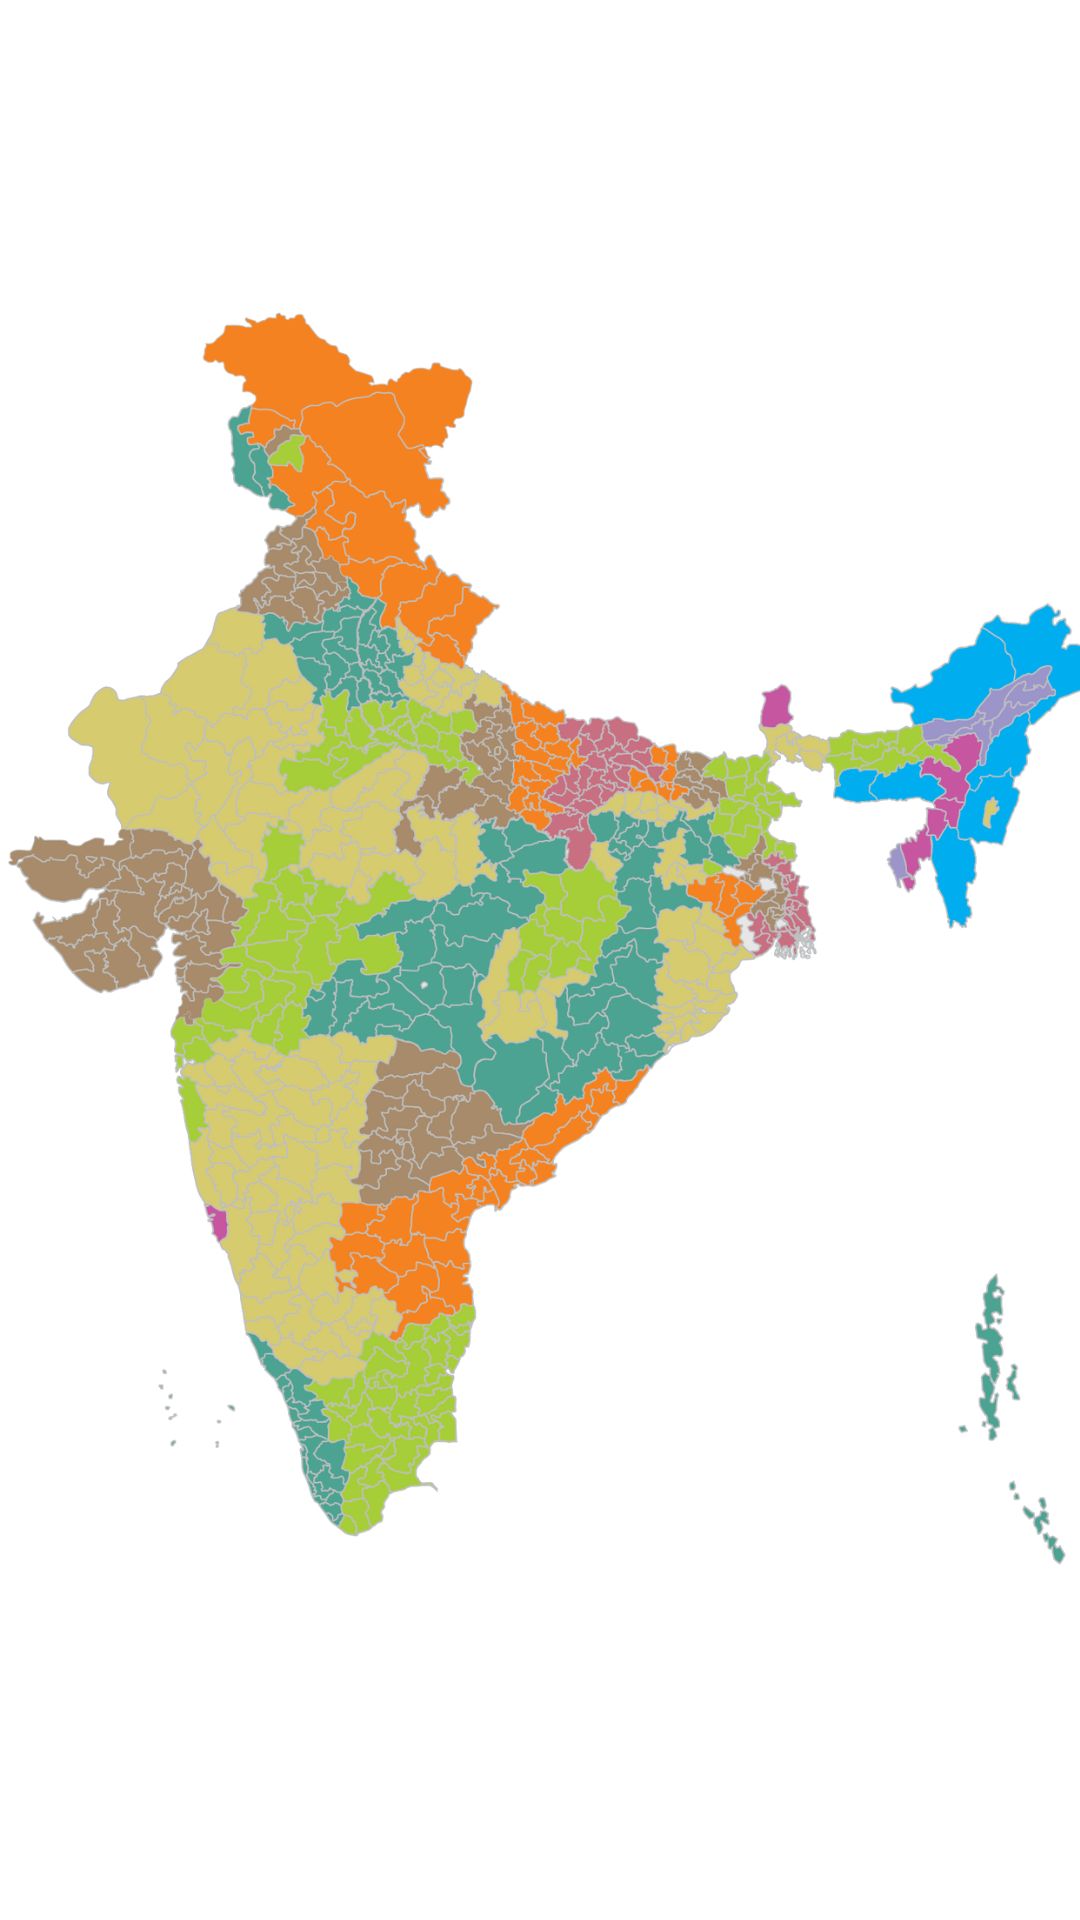 क्षेत्रफल के हिसाब से भारत के सबसे छोटे राज्य 